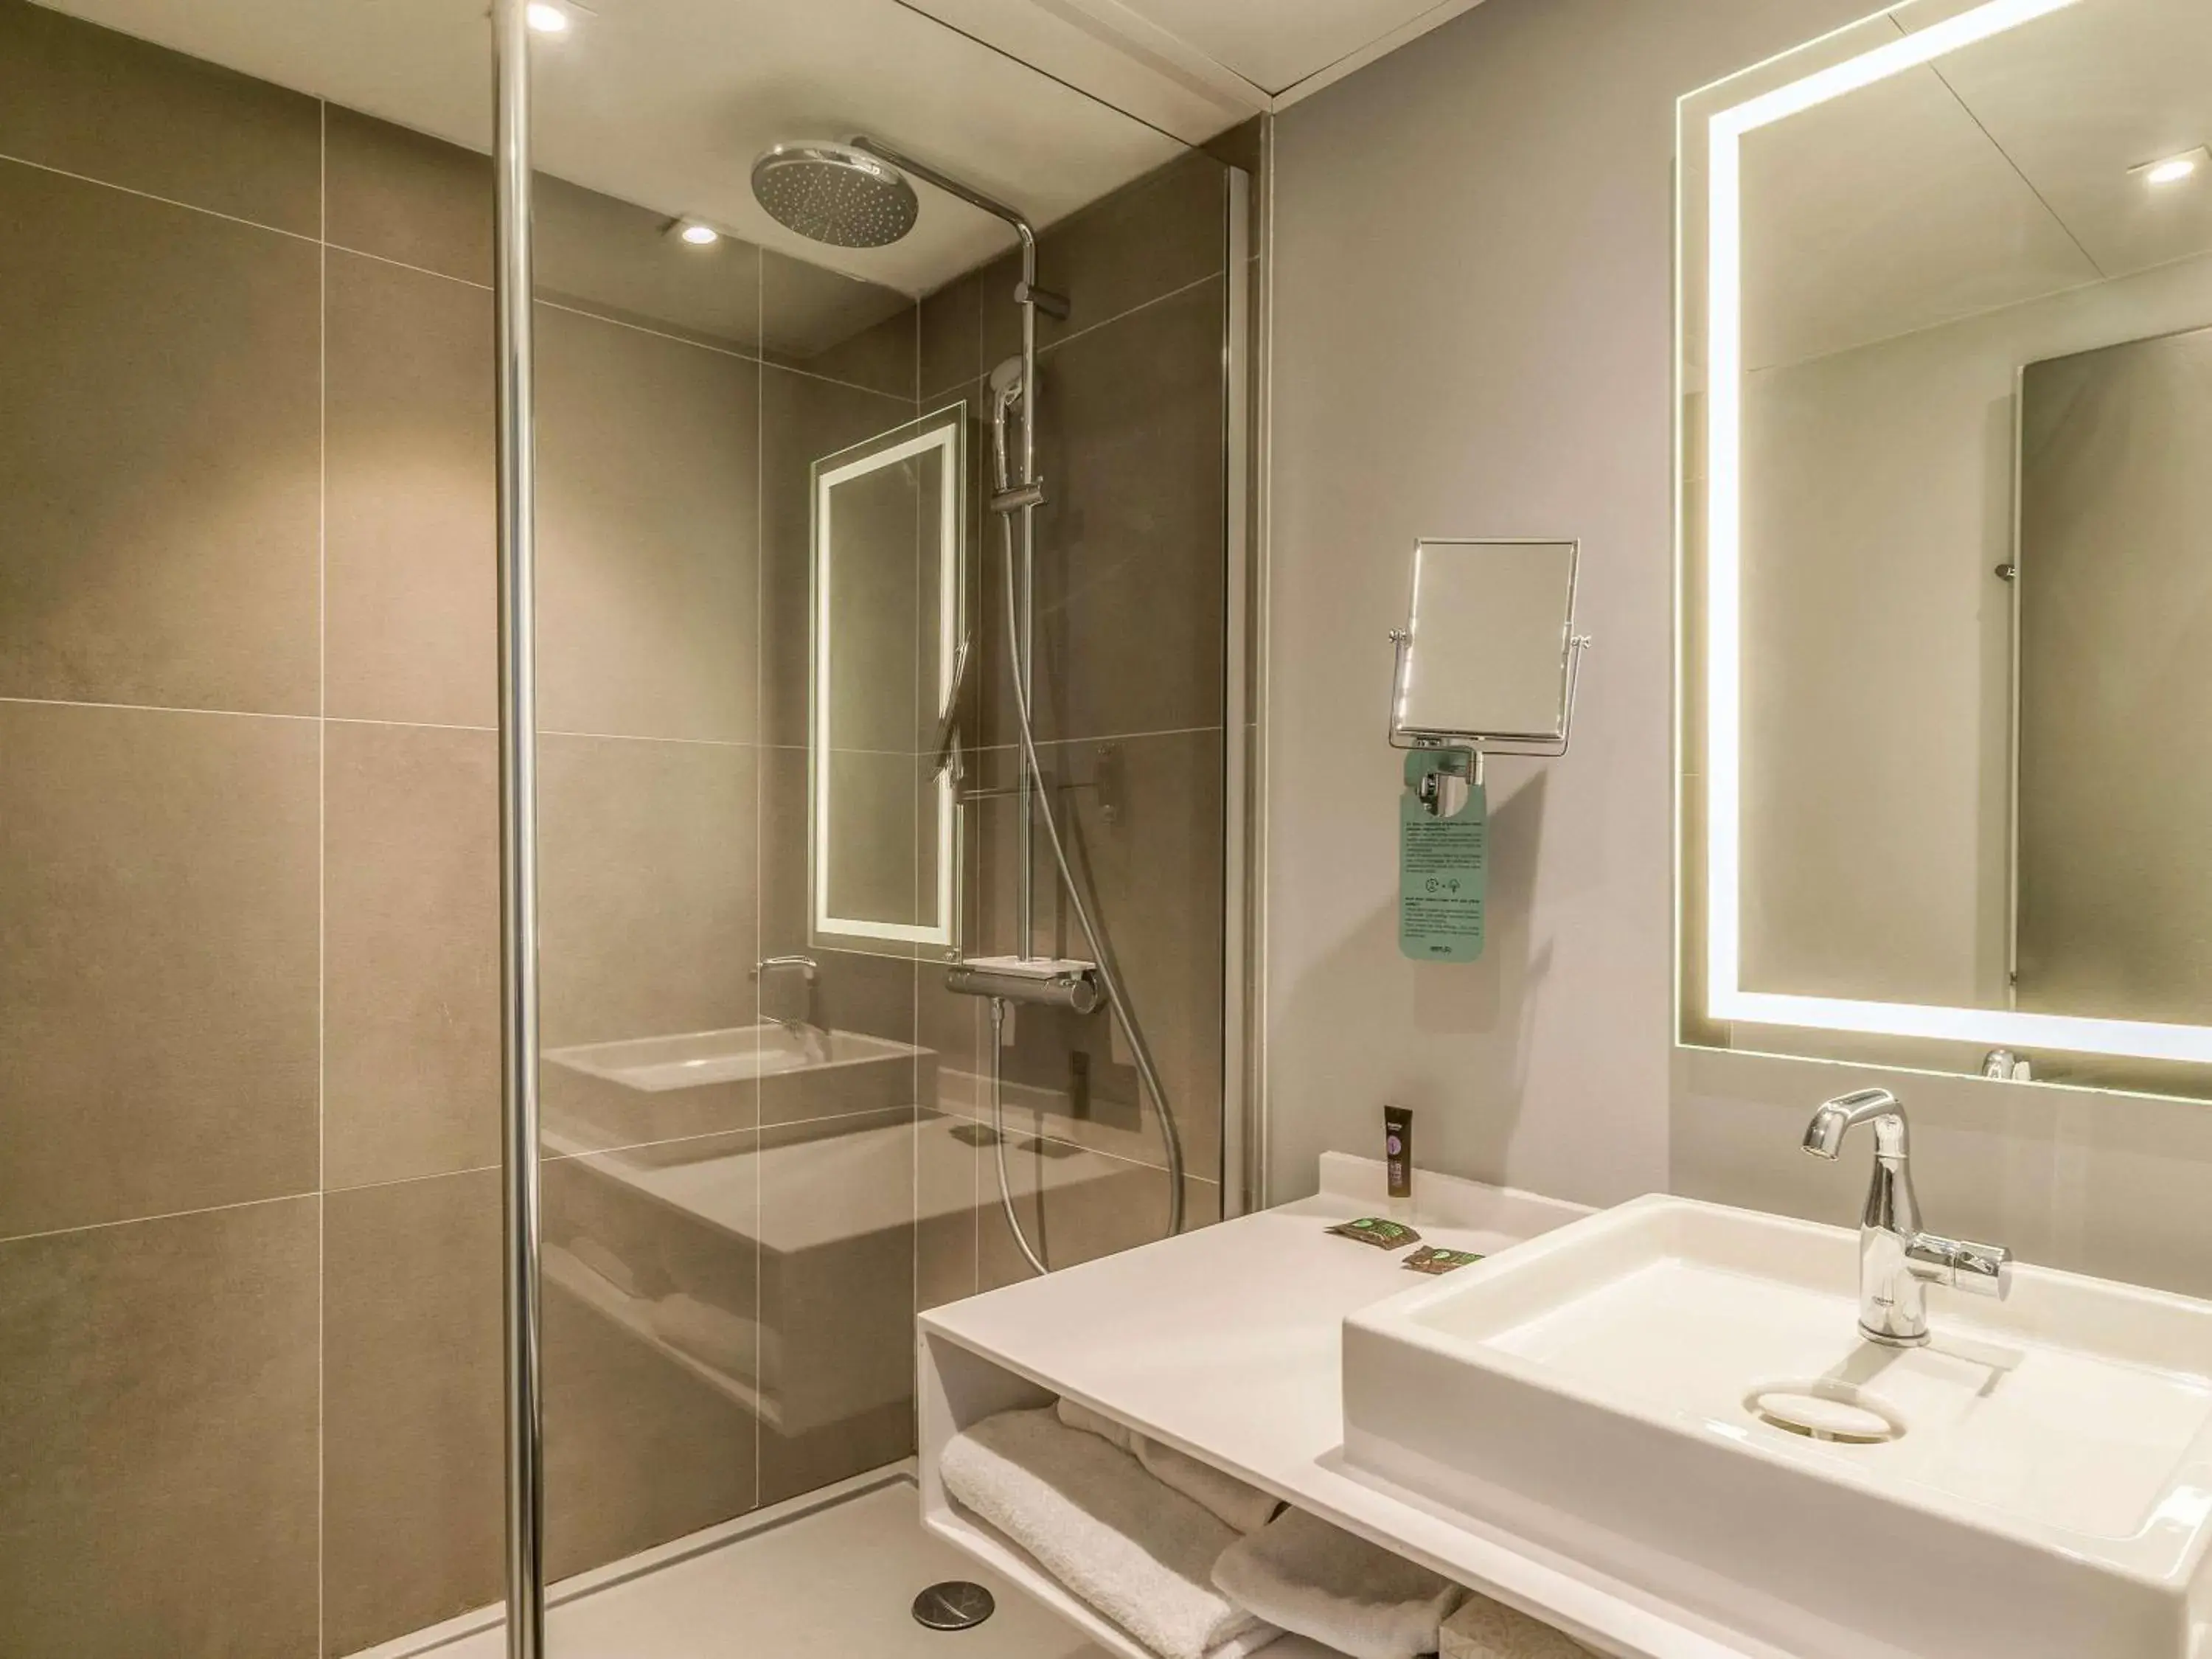 Photo of the whole room, Bathroom in Novotel Paris Créteil Le Lac